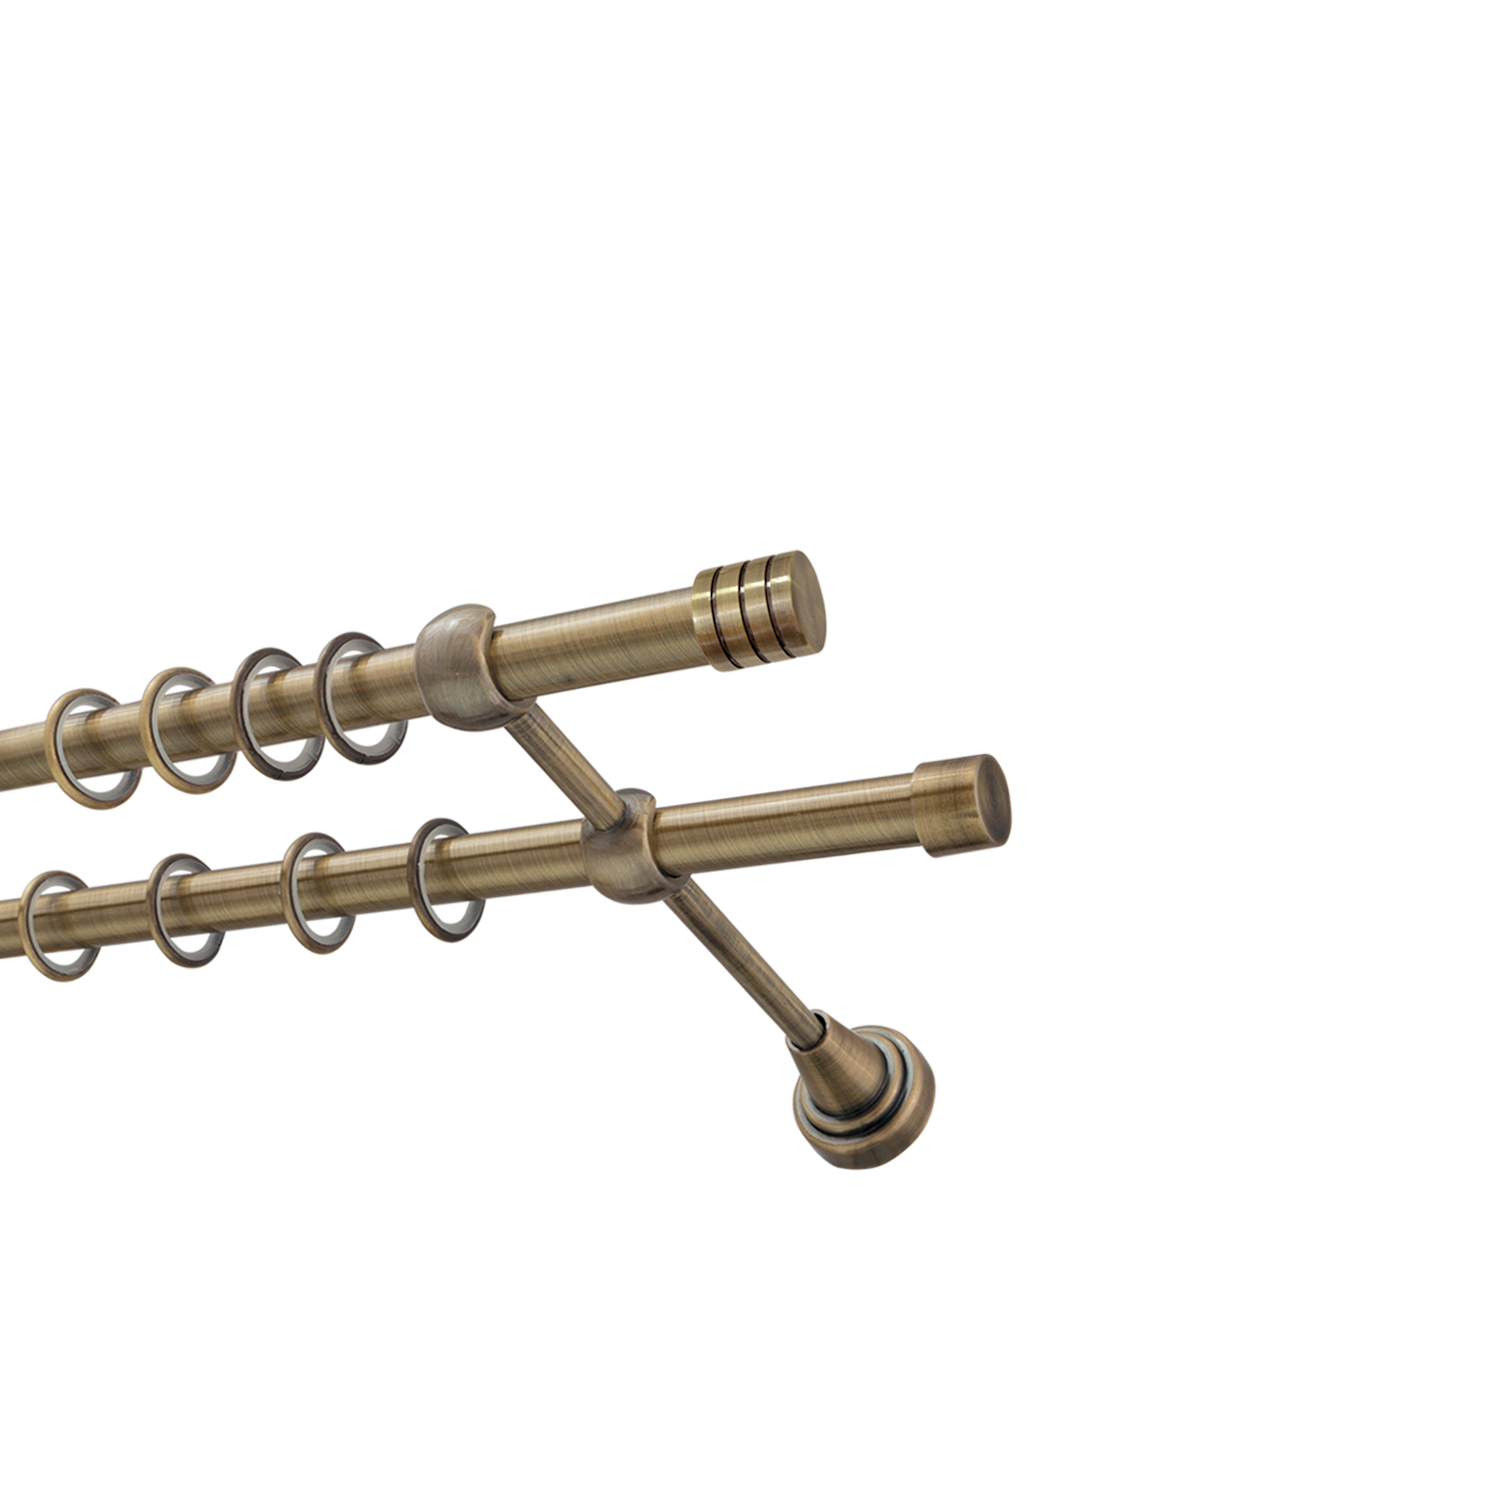 Металлический карниз для штор Подиум, двухрядный 16/16 мм, бронза, гладкая штанга, длина 180 см - фото Wikidecor.ru